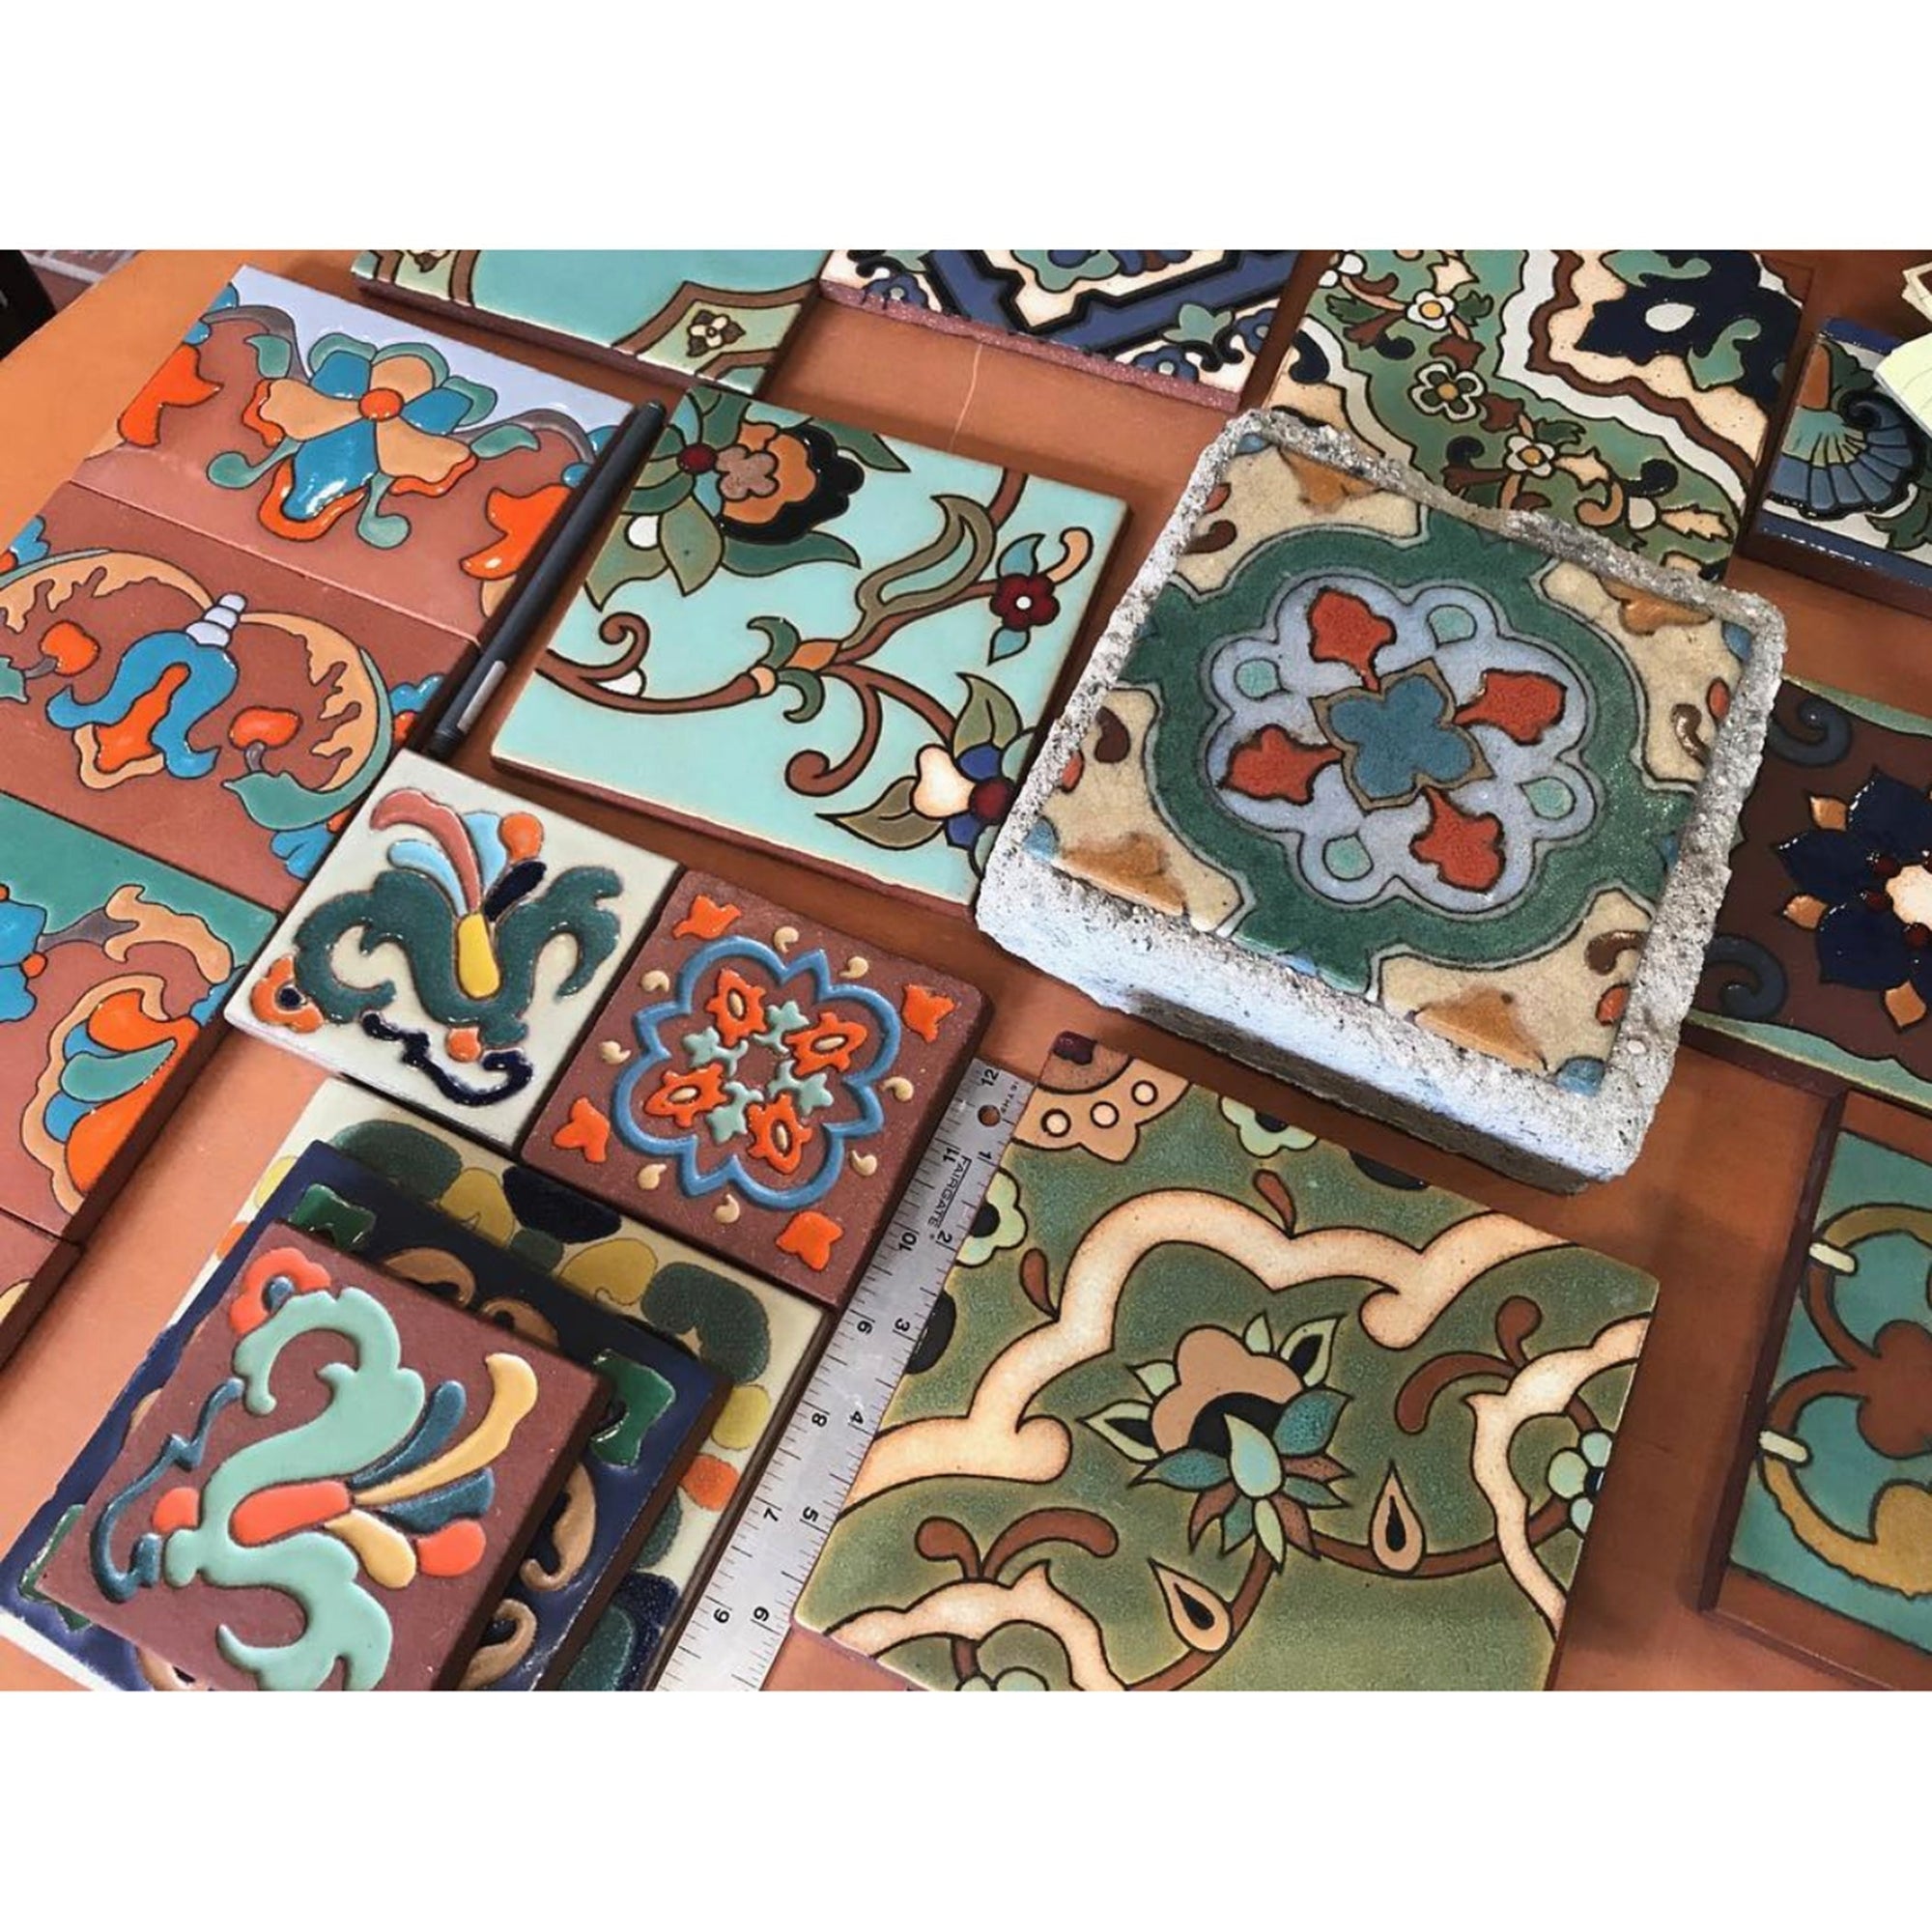 Malibu Tile Coasters - Set of 4 - "Jade, Mustard & Sage"